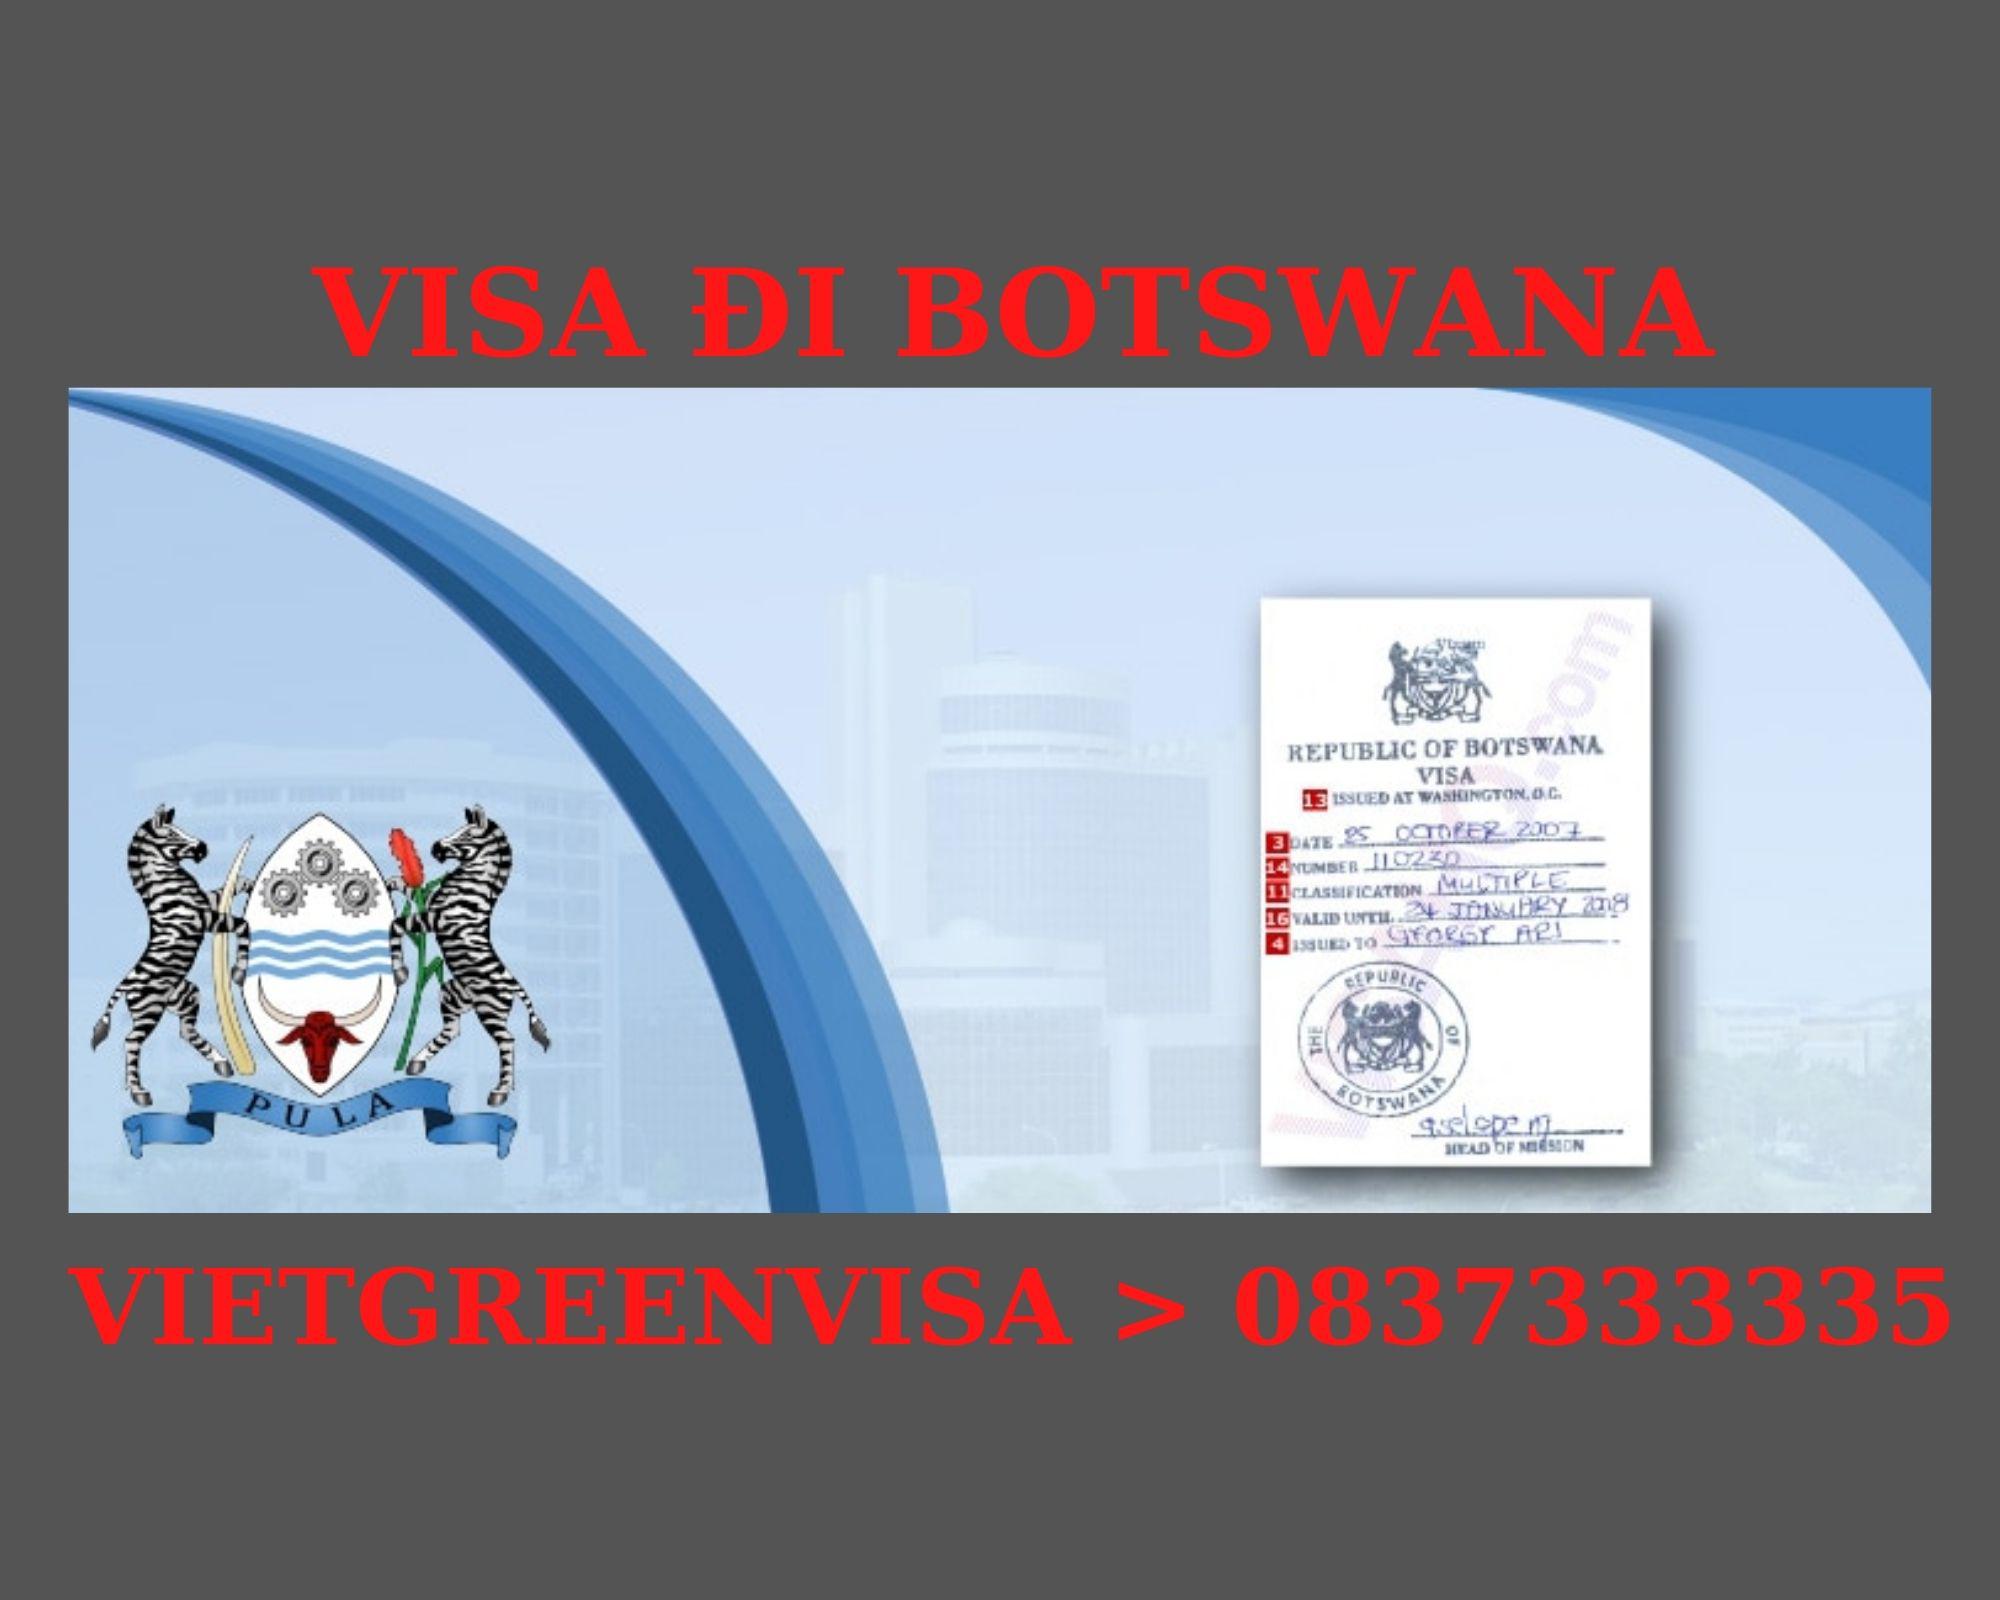 Làm Visa Botswana thăm thân uy tín, nhanh chóng 